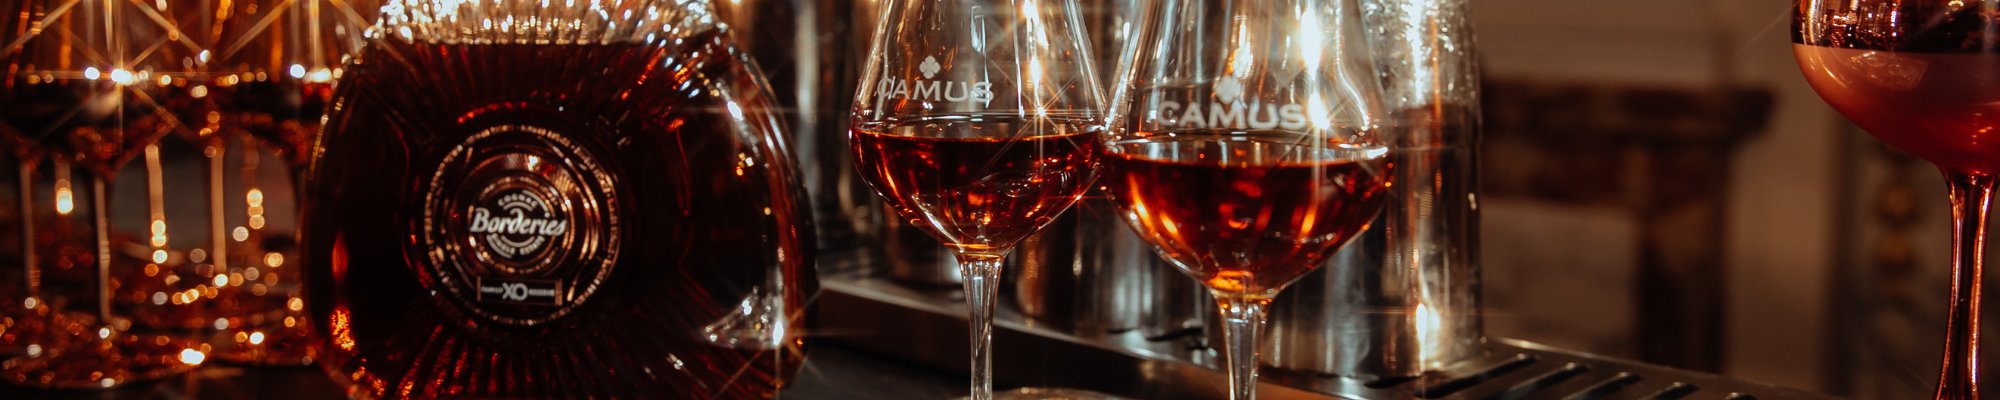 borderies cognac camus luxe 